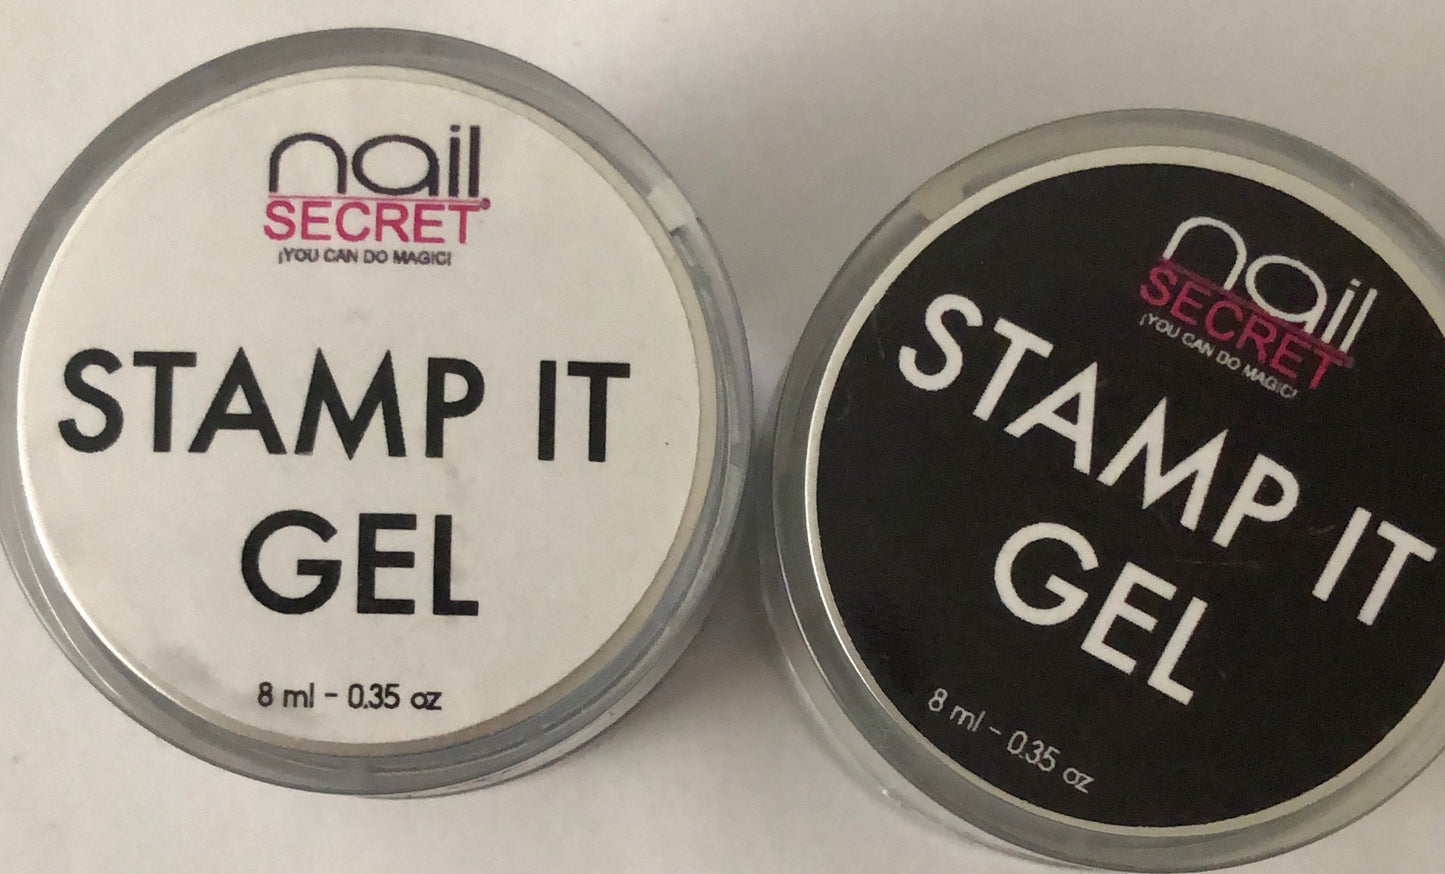 Stamp it gel - Gel estampado